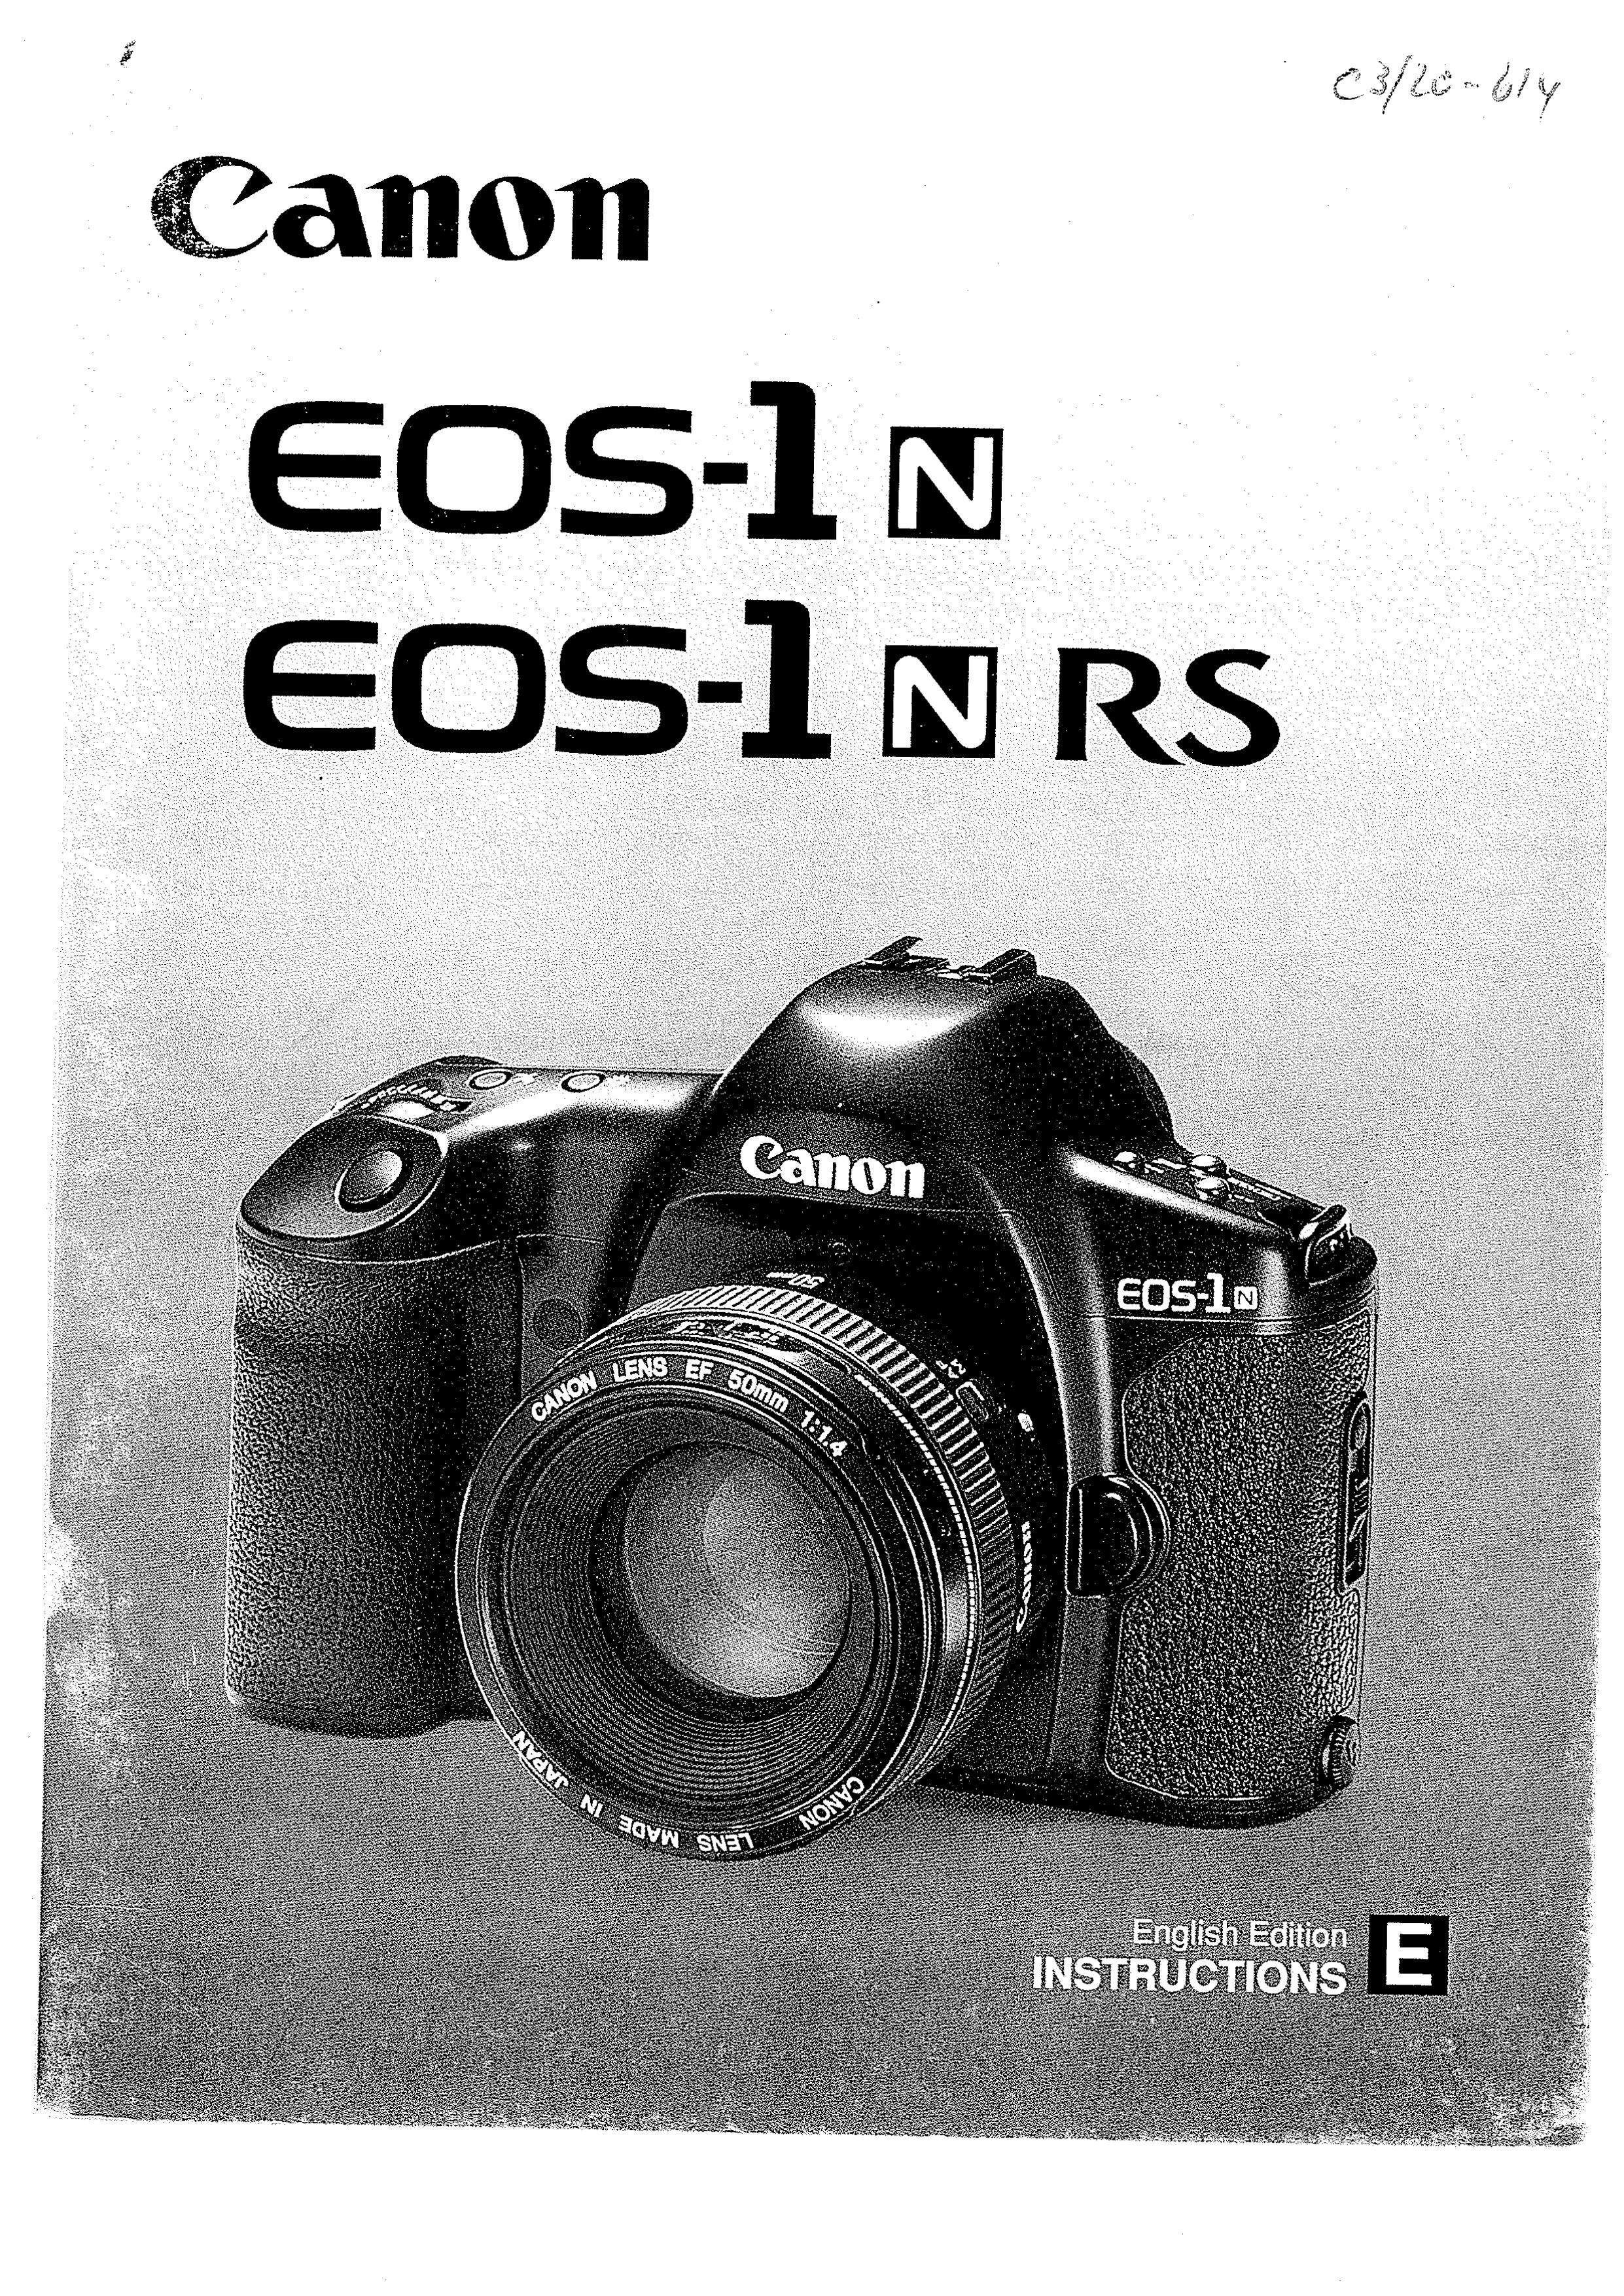 Canon 1N Digital Camera User Manual